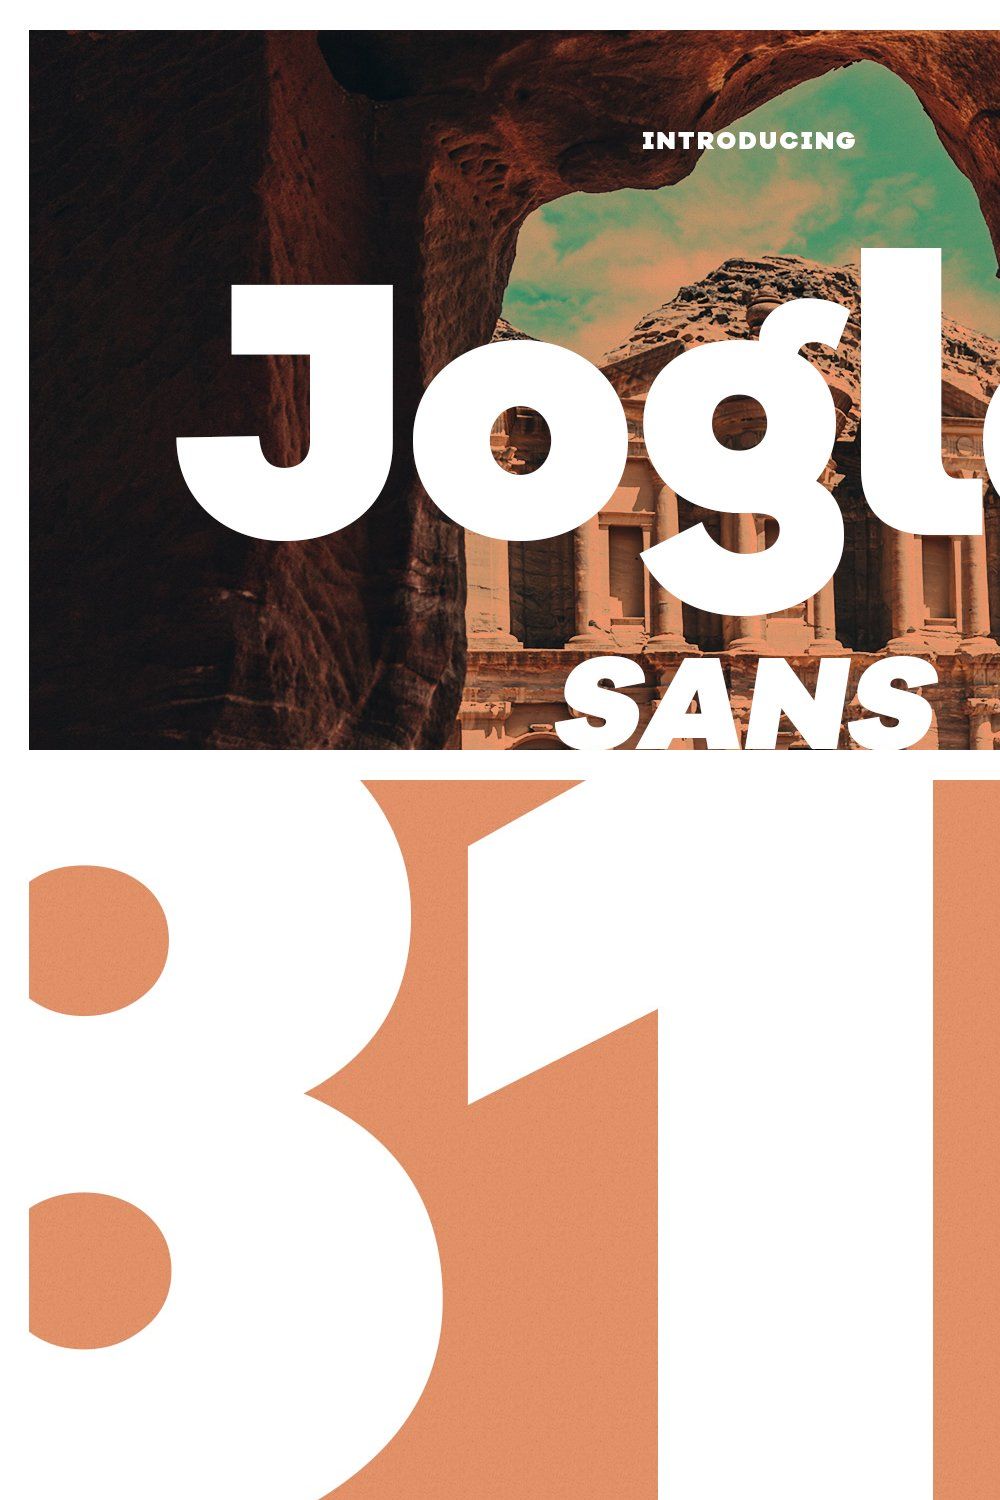 Jogler Sans Display Font pinterest preview image.